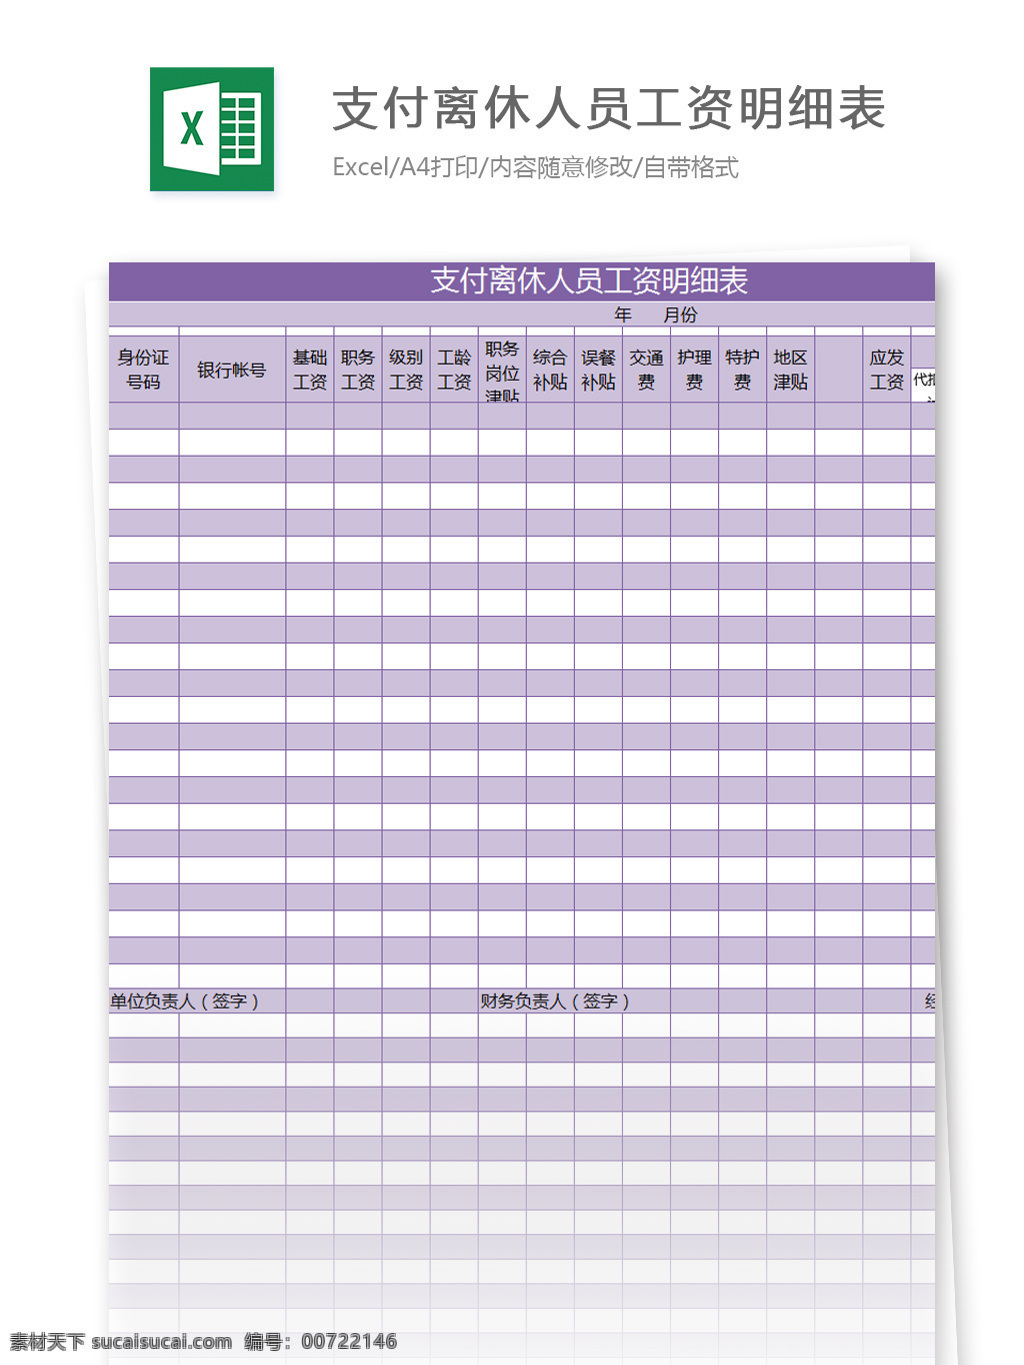 支付 离休 人员 工资 明细表 excel 模板 表格模板 图表 表格设计 表格